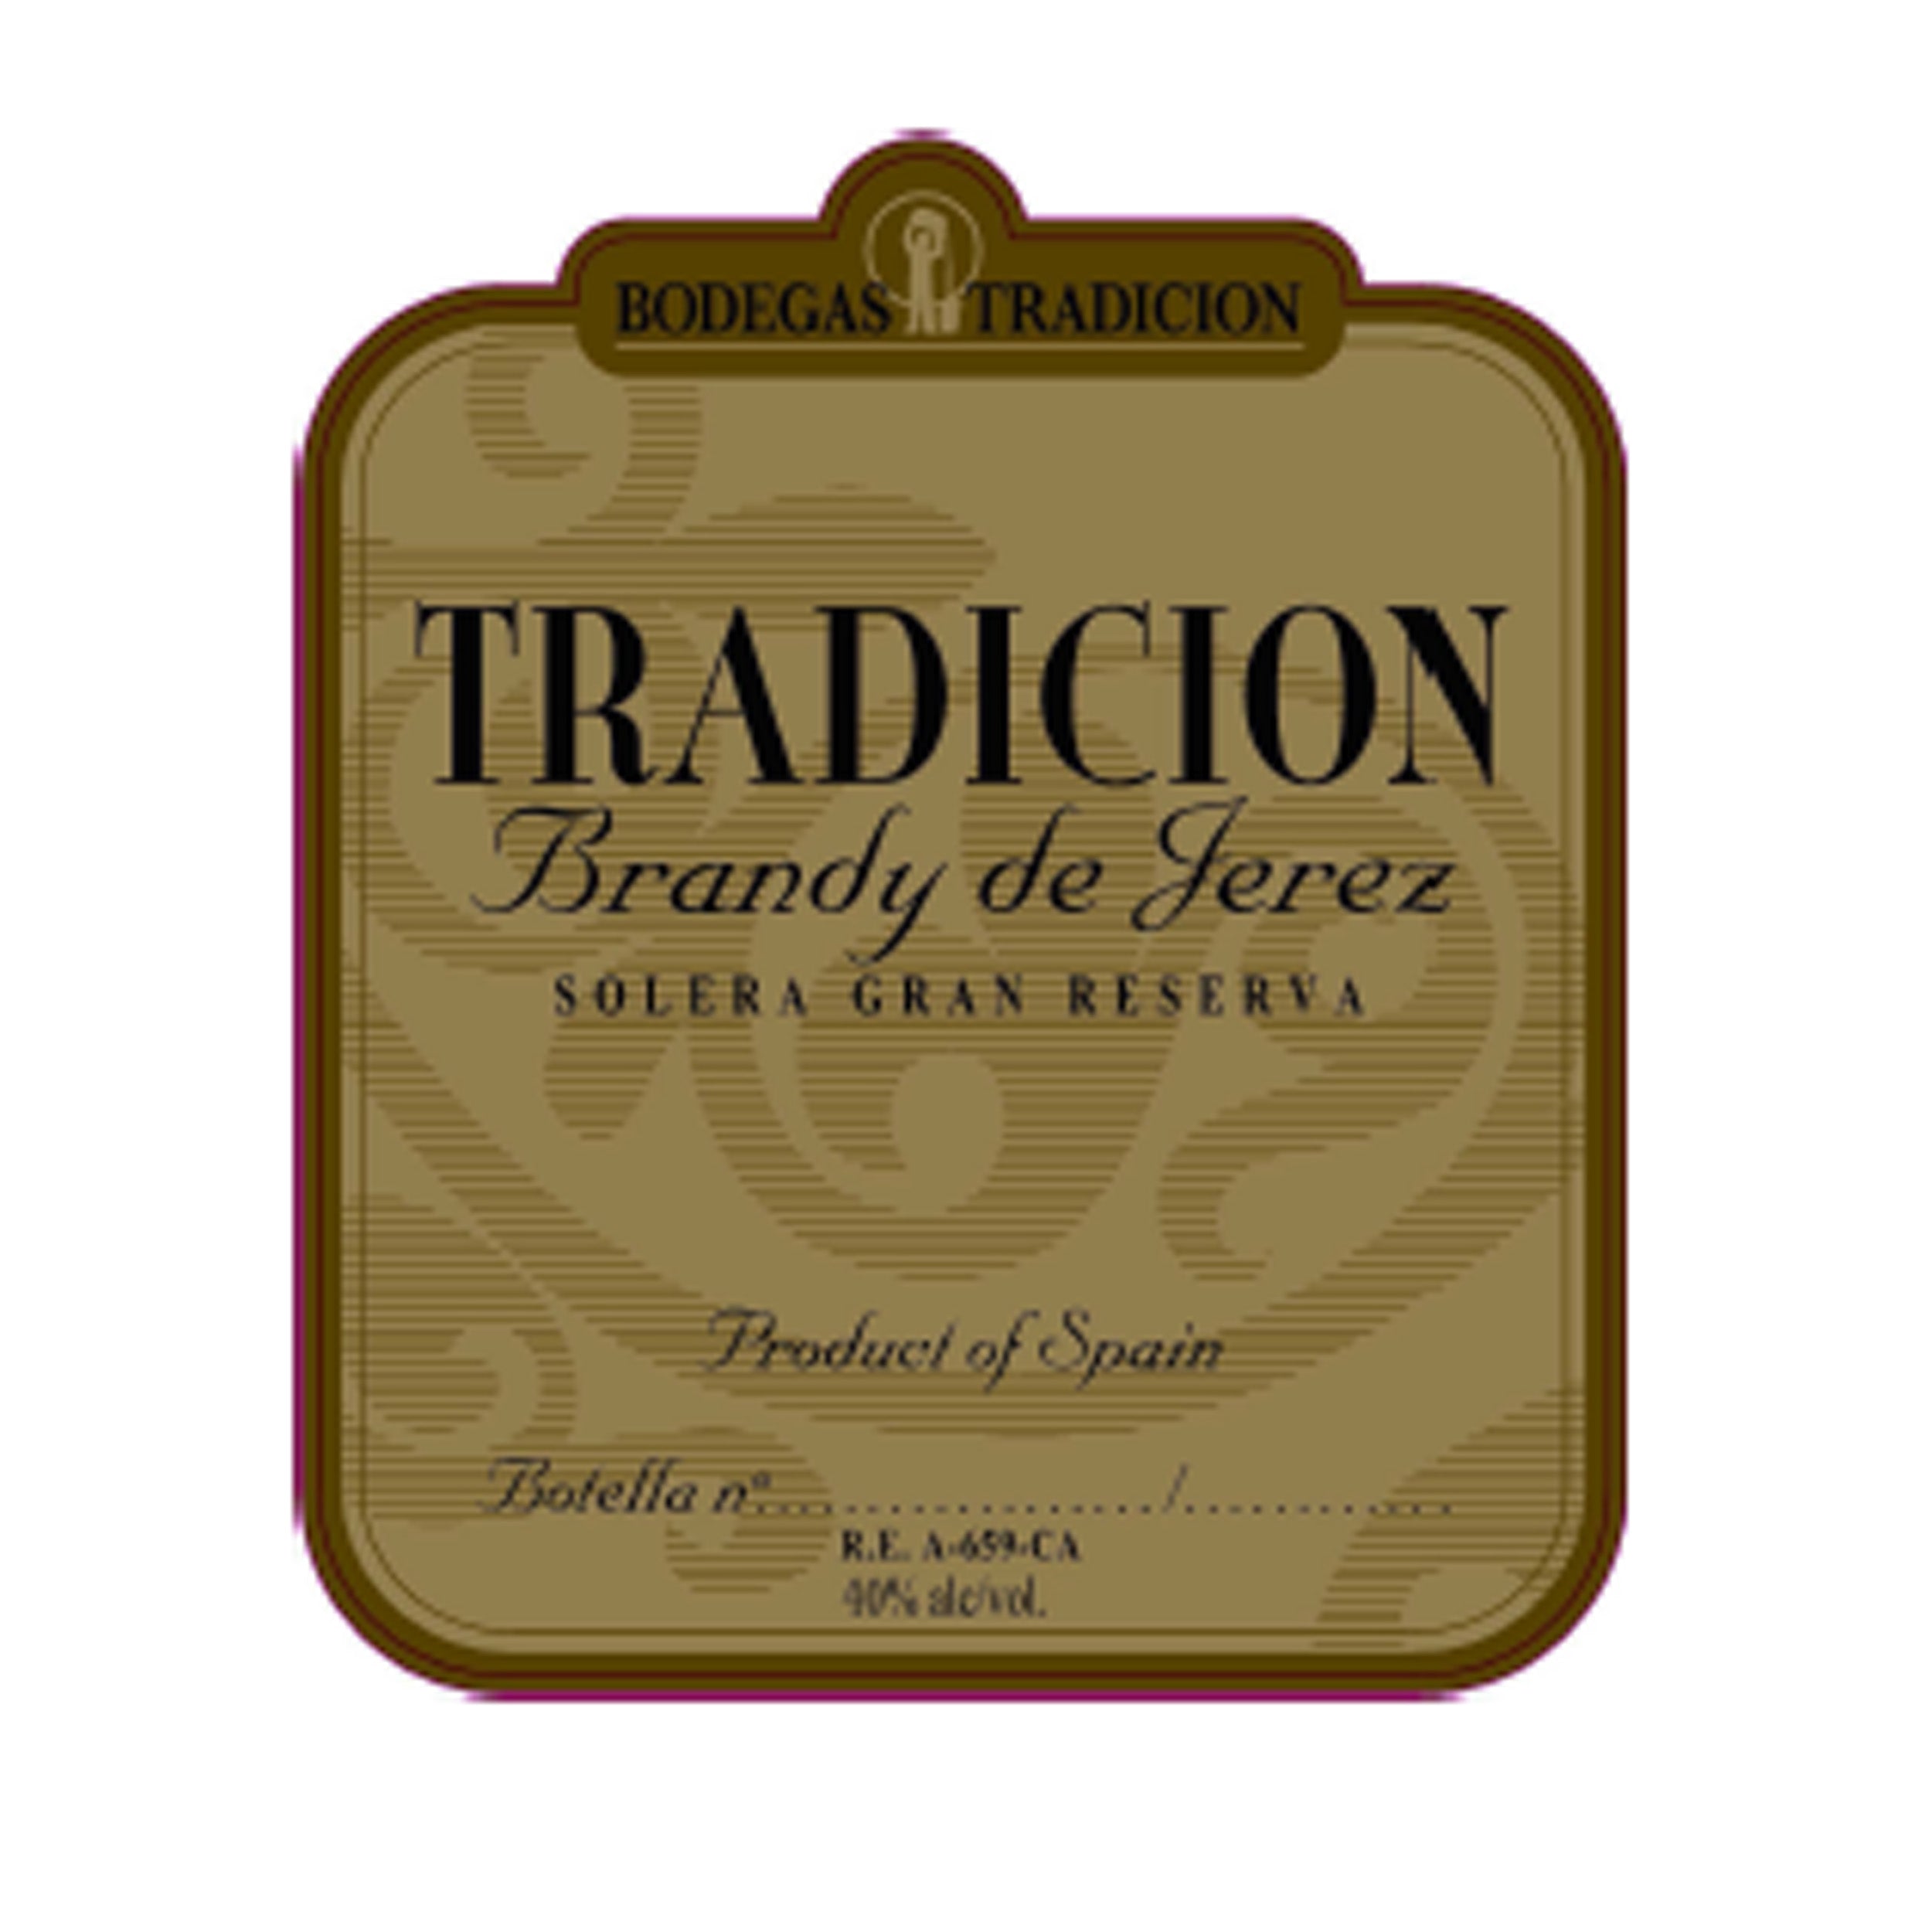 Bodegas Tradicion Brandy de Jerez